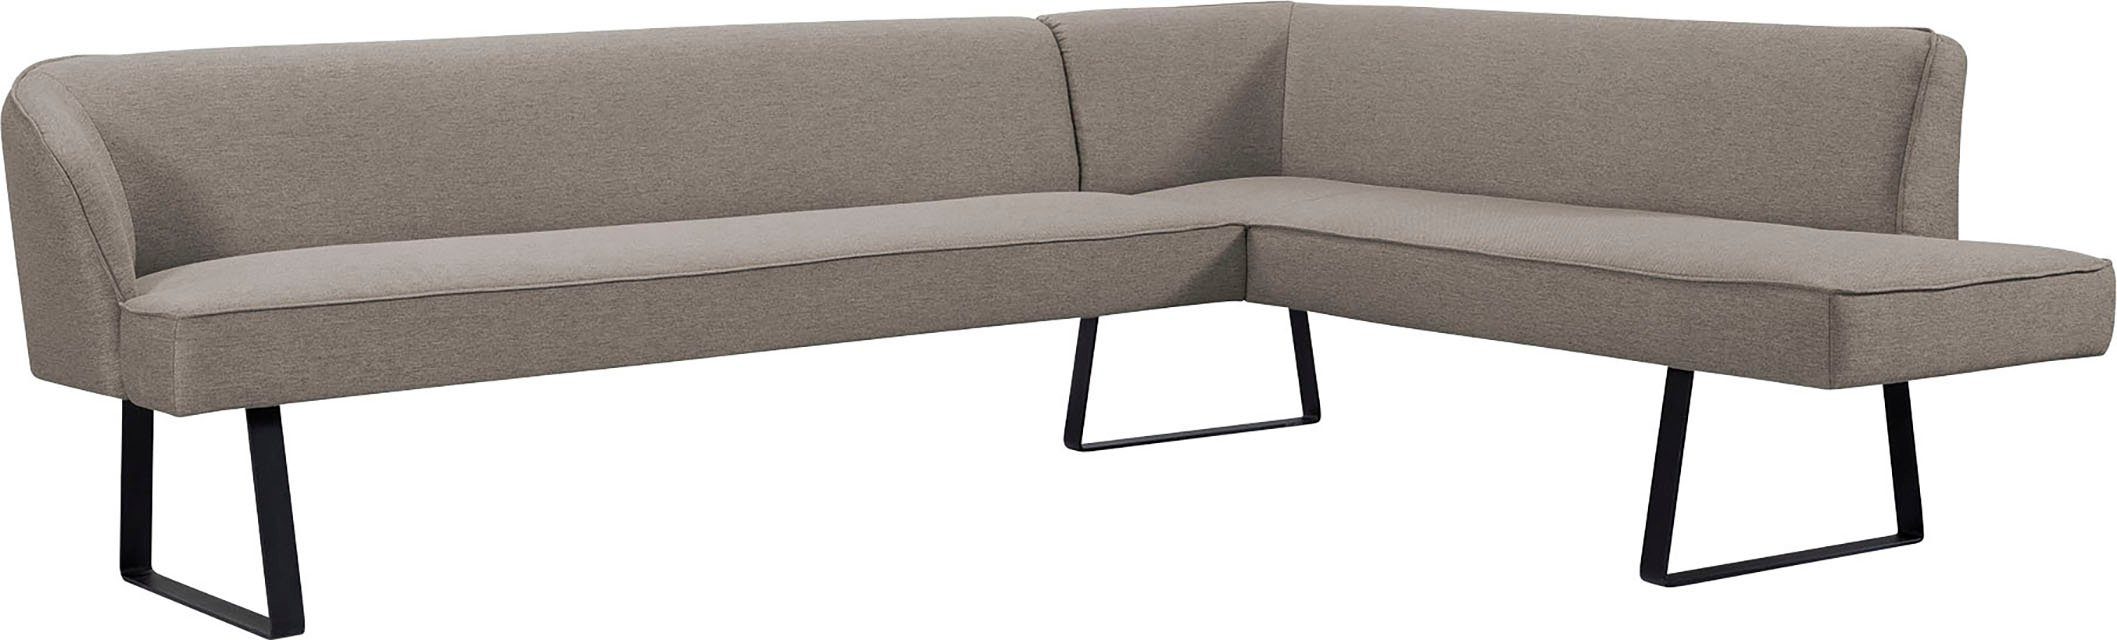 exxpo - sofa fashion in mit verschiedenen Metallfüßen, Eckbank Americano, und Keder Bezug Qualitäten